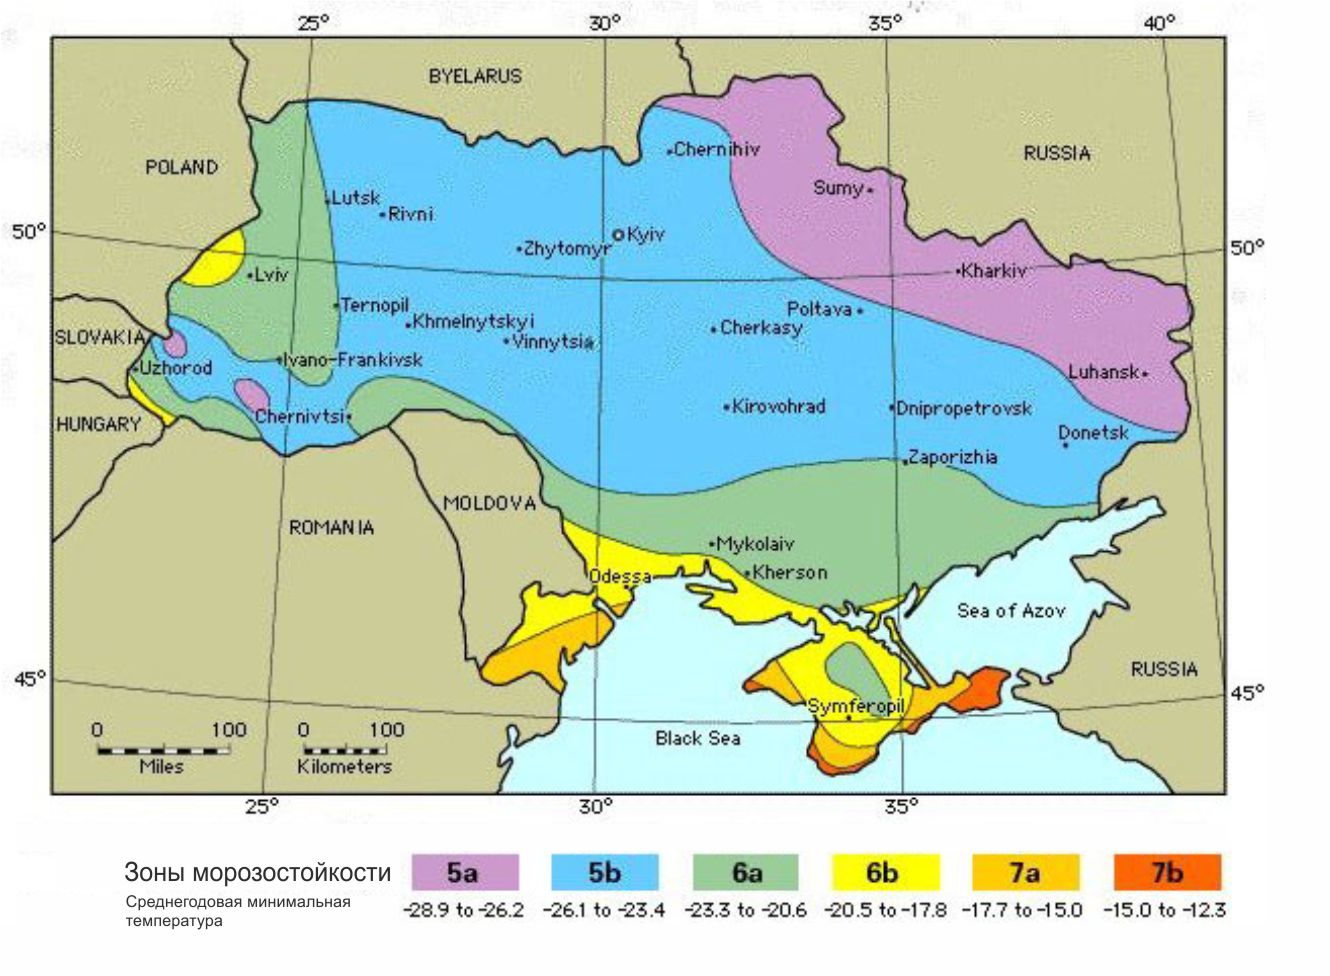 Карта зон морозостойкости Украины